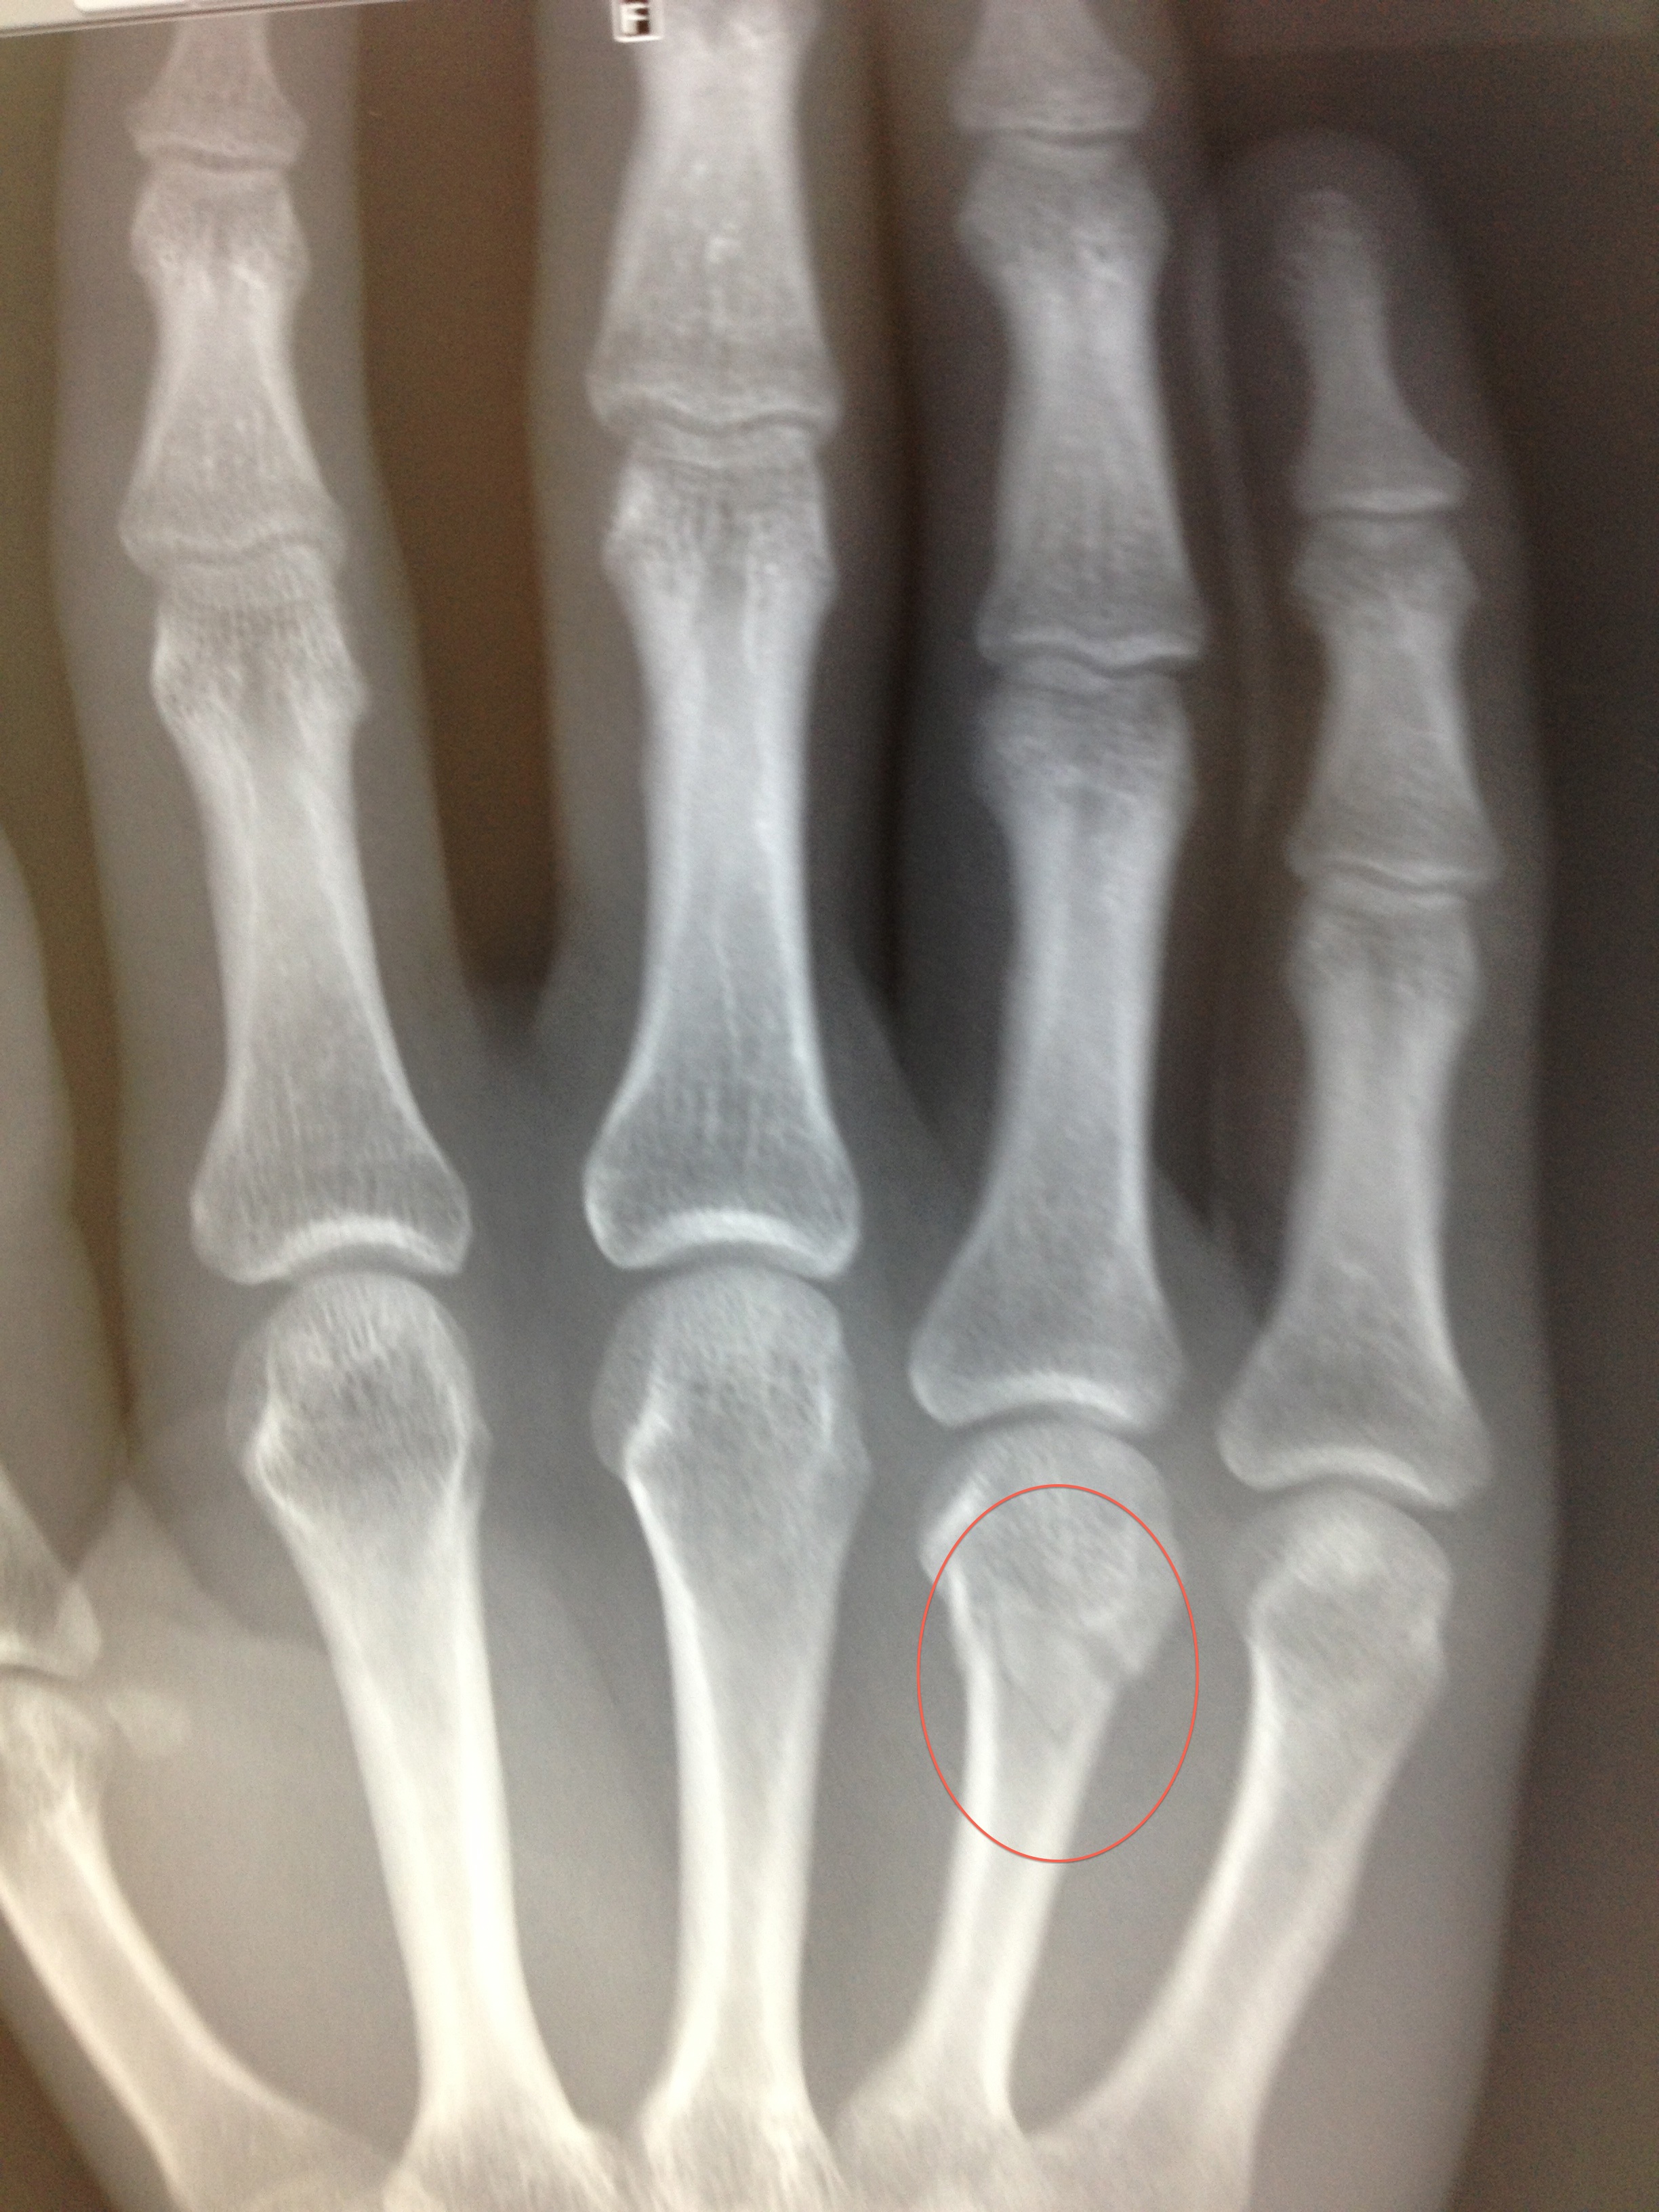 Bone physiology, Injury, Rehabilitation, Broken Hand, Broken Hand Recovery, Broken Hand Treatment, Broken Hand Exercise